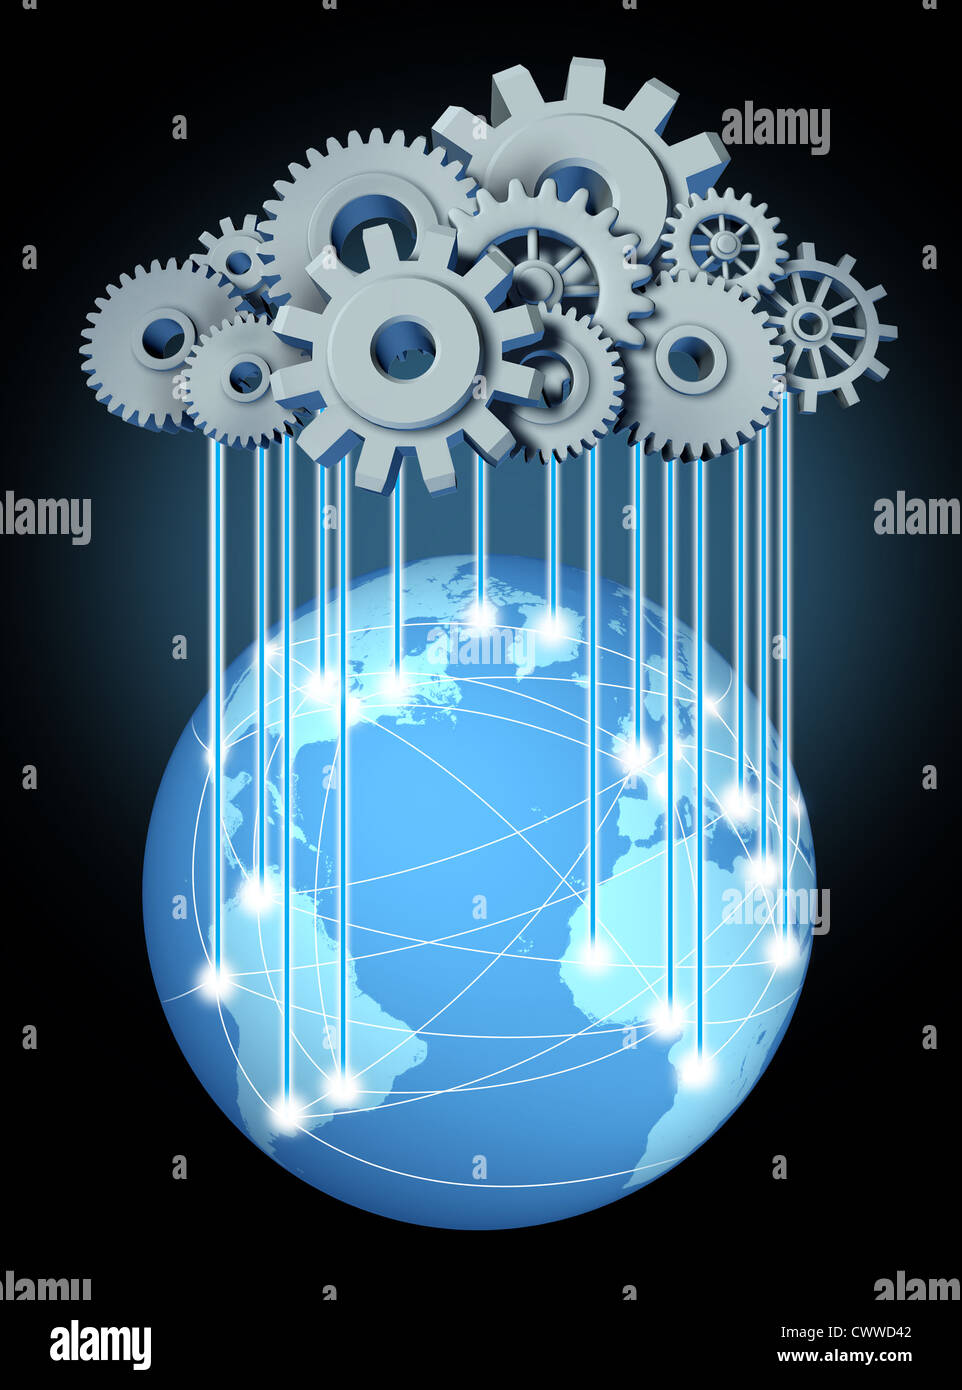 Global Networking cloud computing simbolo di rete con una nuvola e la pioggia in forma di ingranaggi e ruote dentate che rappresentano l'espansione Foto Stock